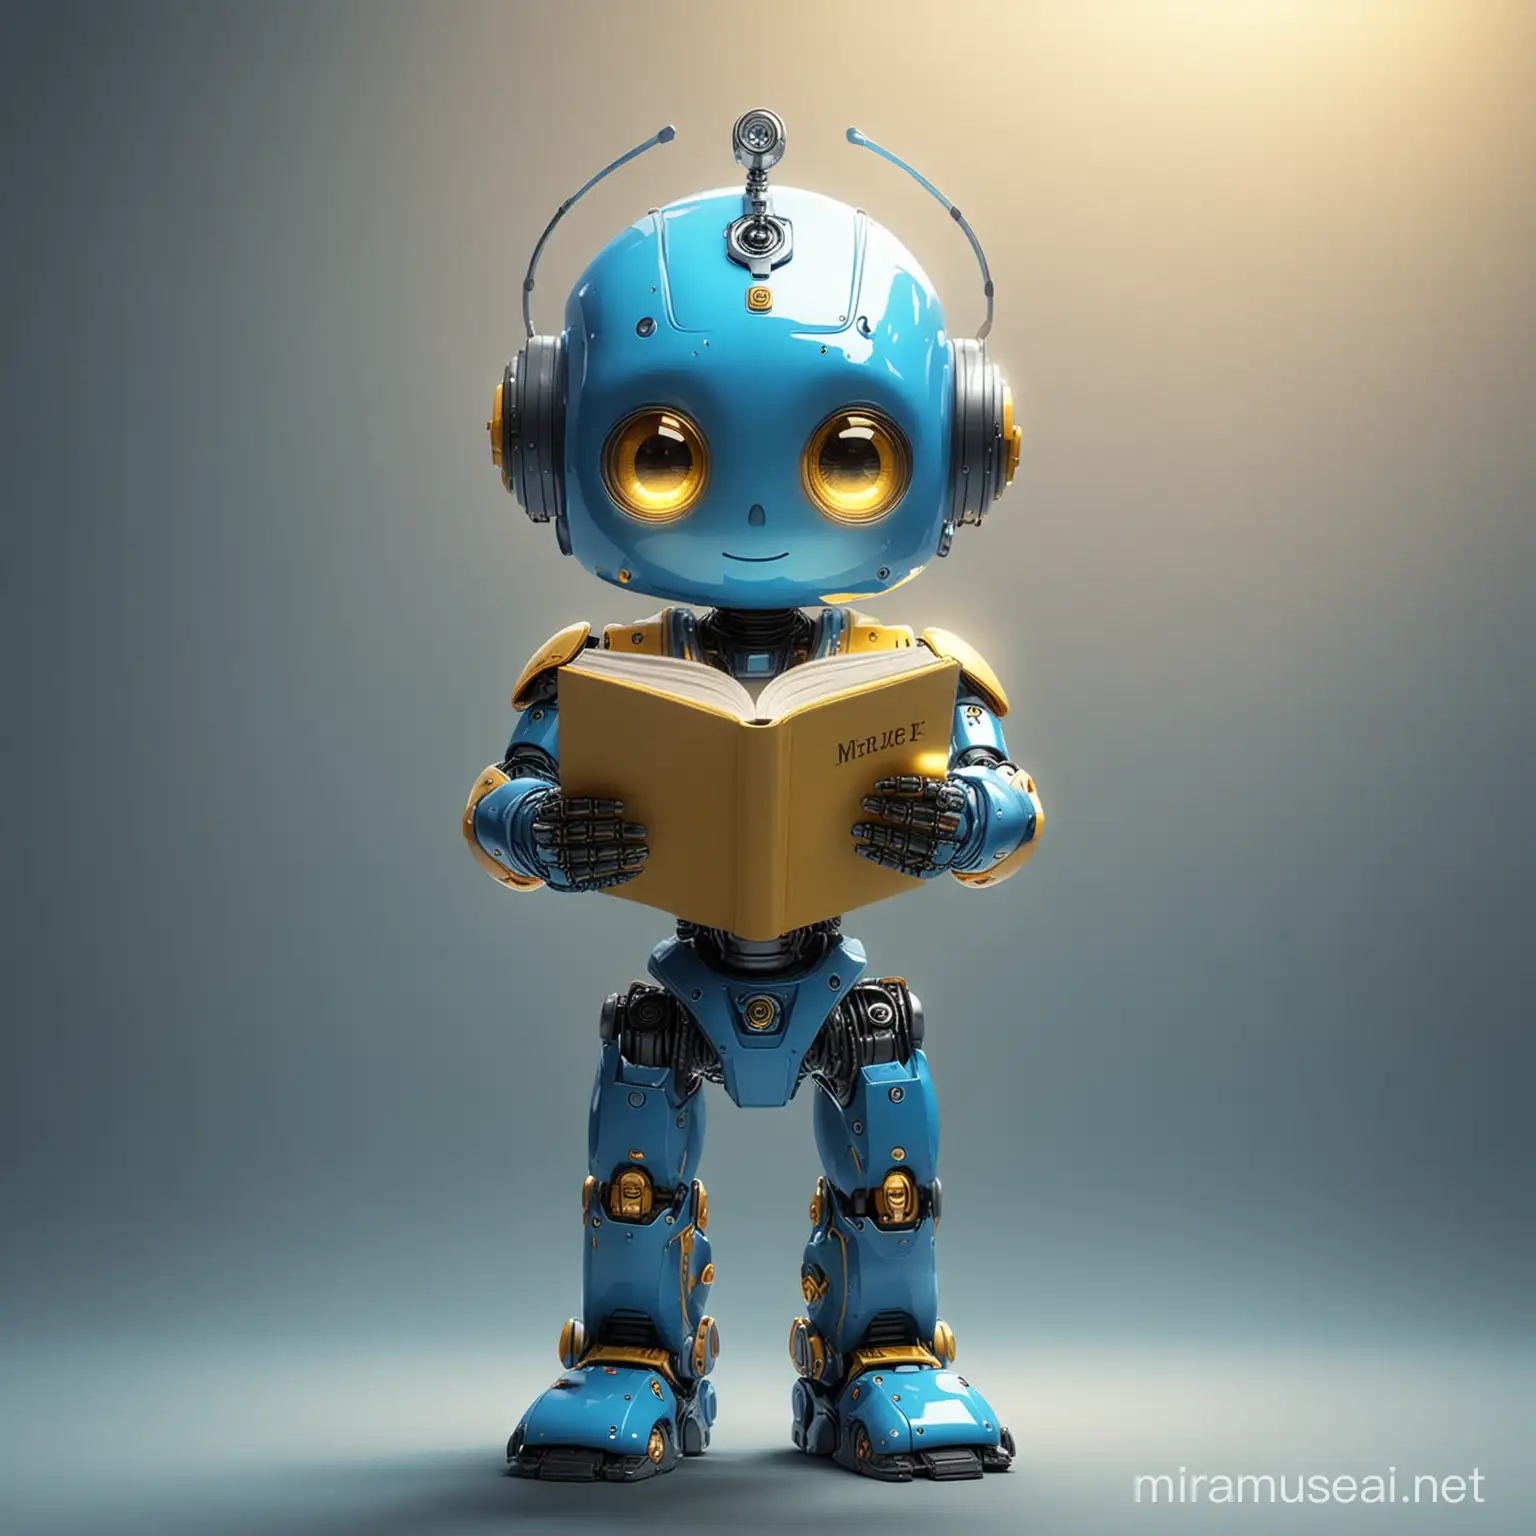 Θέλω ένα πολύ όμορφο και χαριτωμένο ρομπότ σε μπλε χρώμα κίτρινά μάτια φωτεινά να βαστάει στο χέρι του ένα βιβλίο και να το διαβάζει και μέσα από το βιβλίο να βγαίνει ένα μαγικό φως